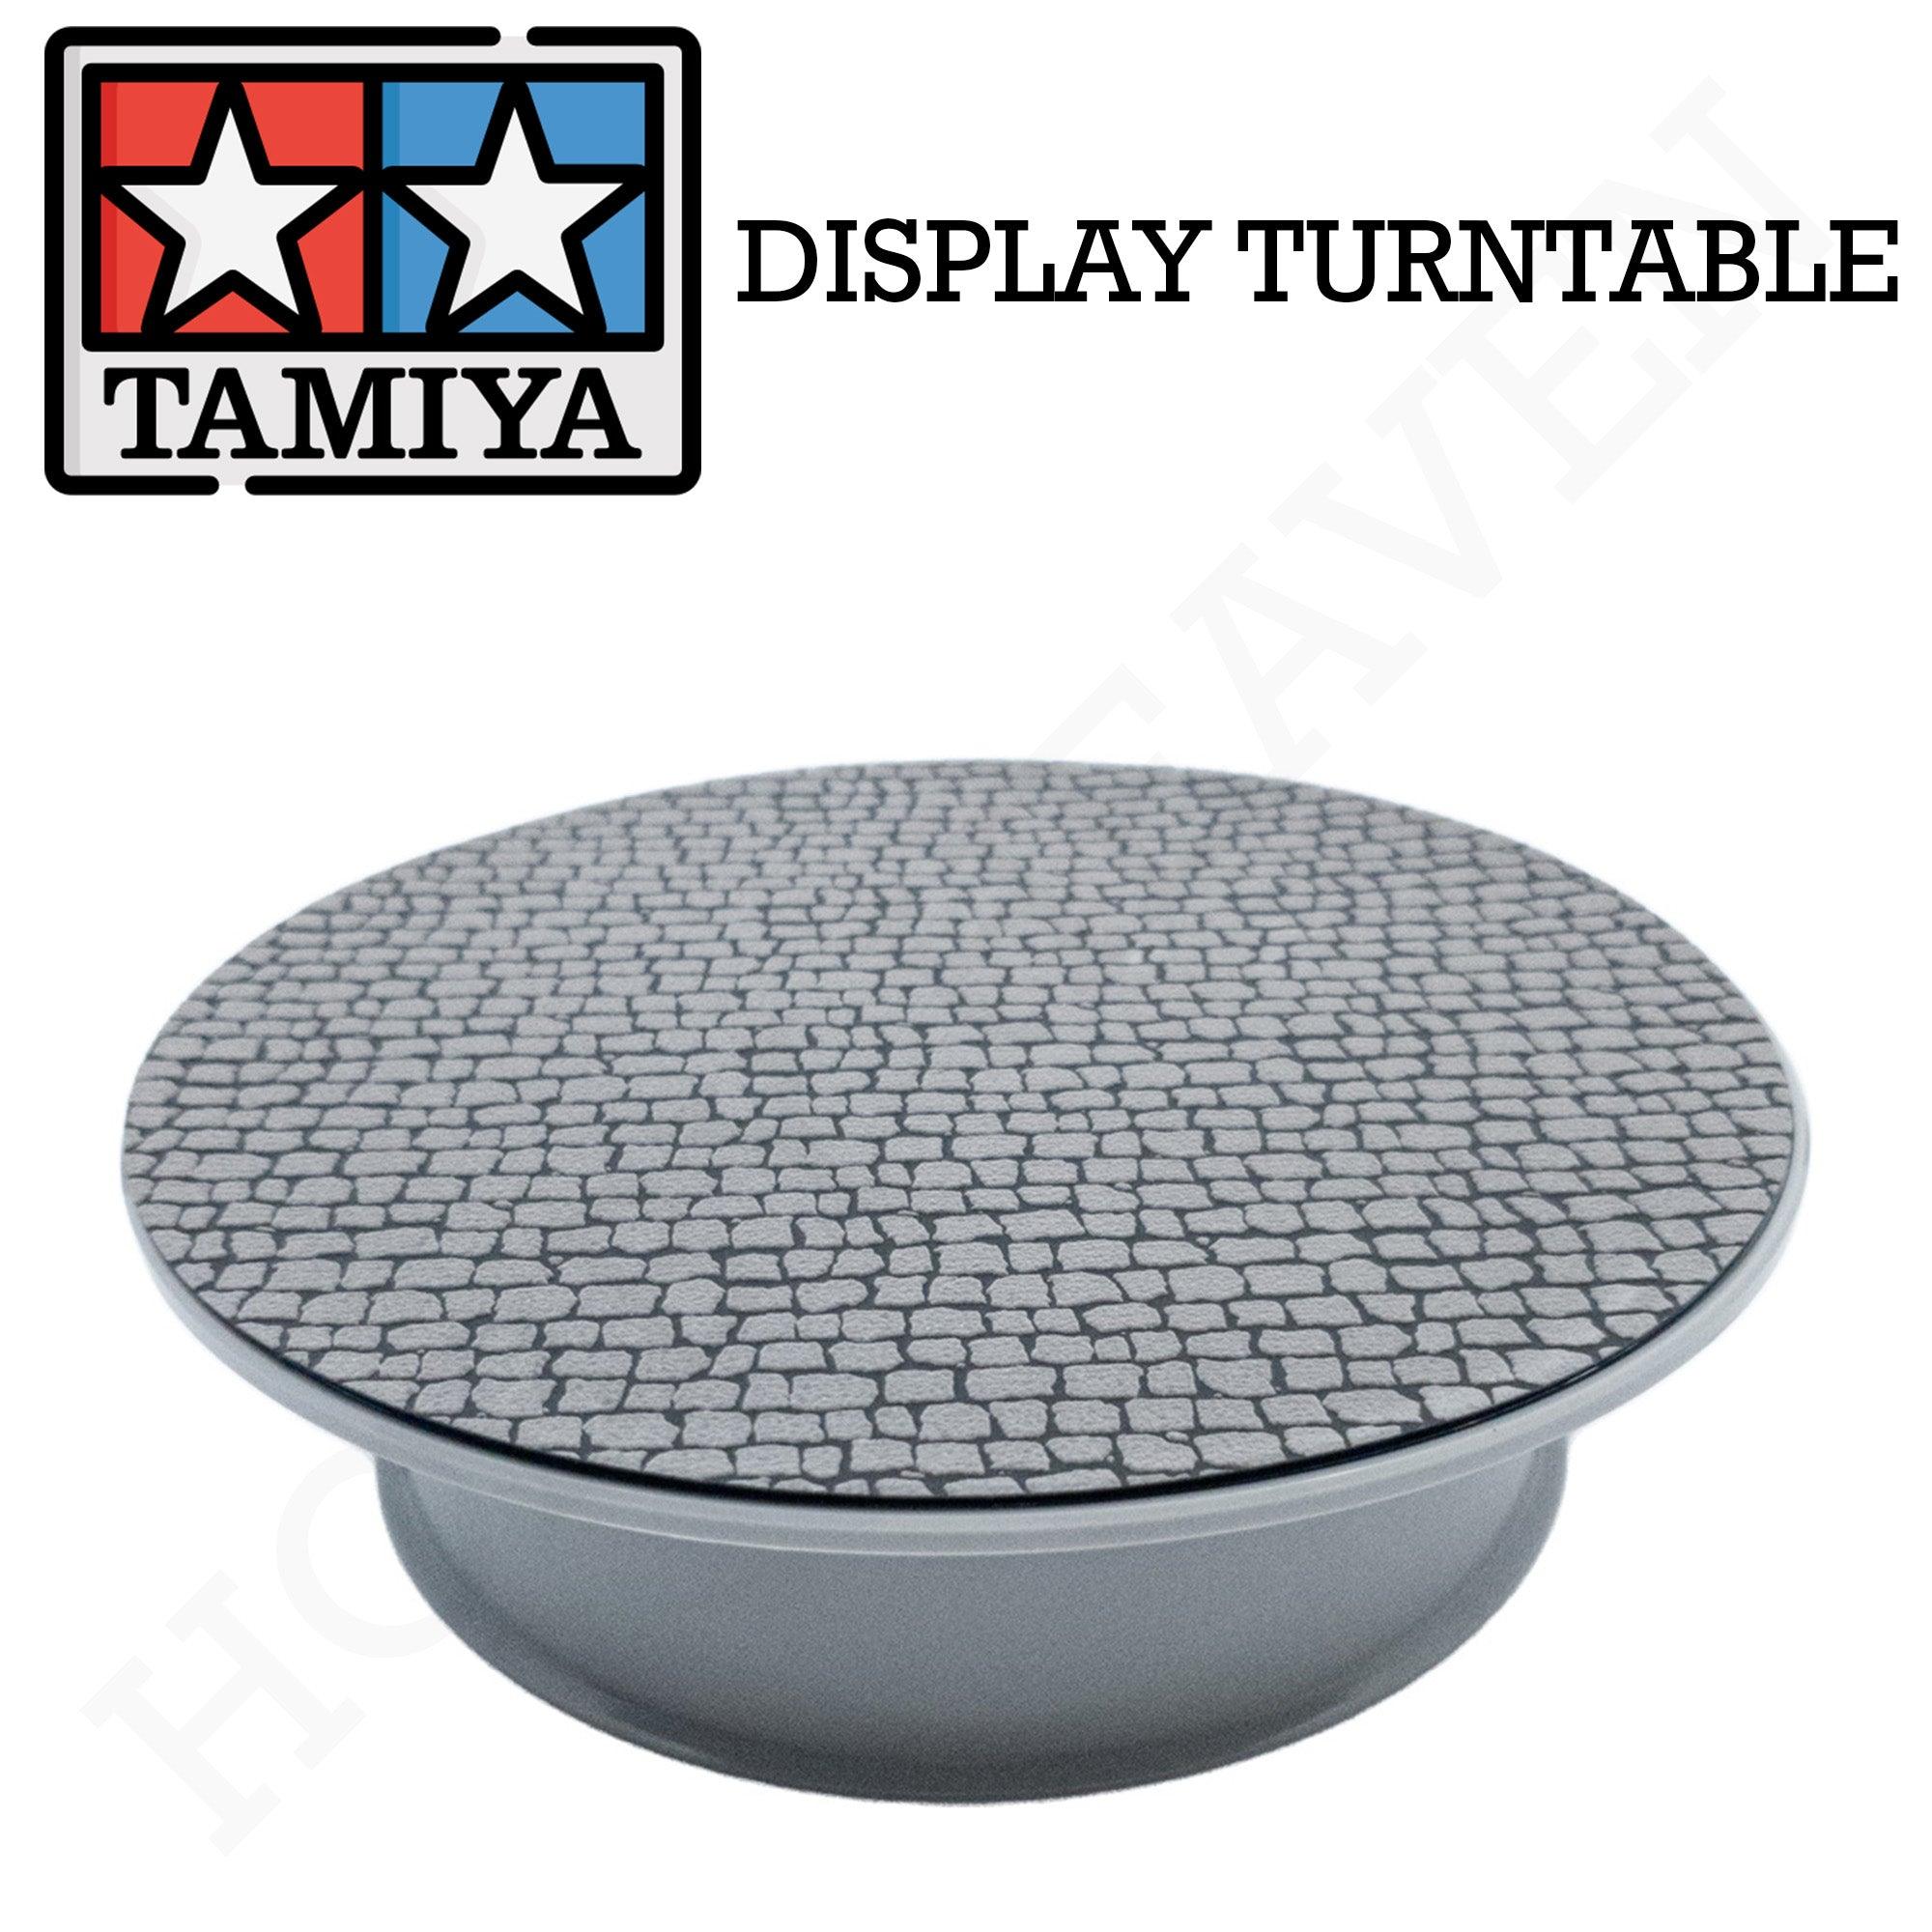 Tamiya Display Turntable 73001